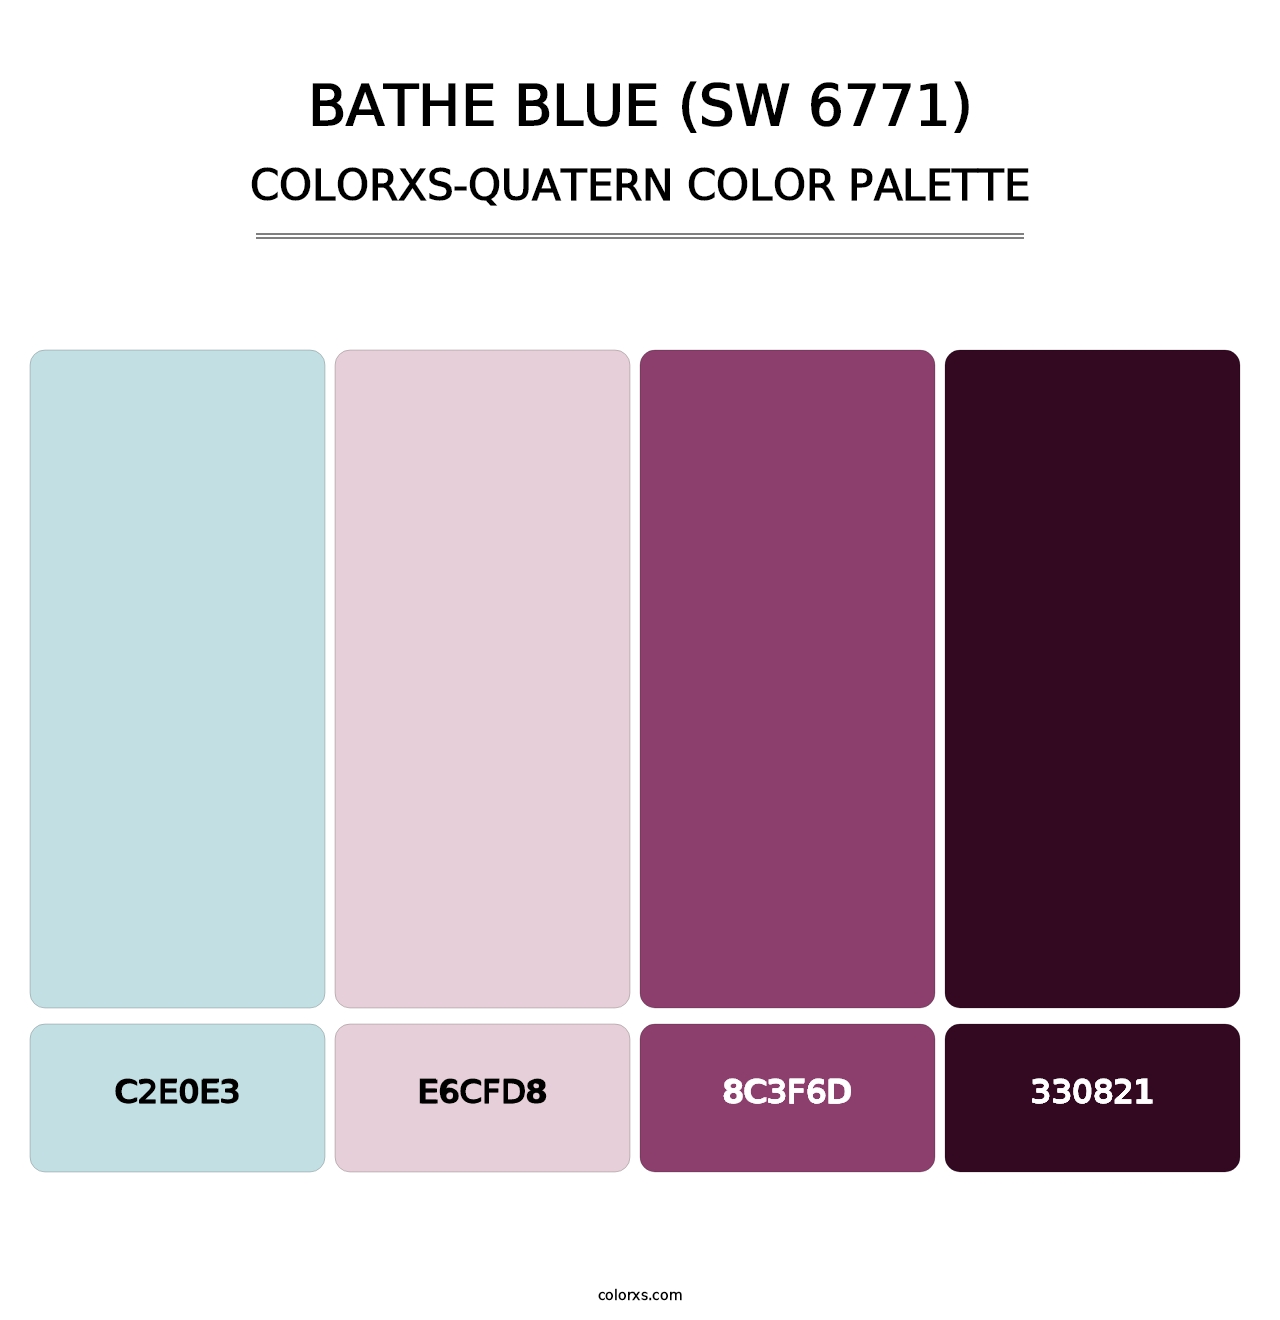 Bathe Blue (SW 6771) - Colorxs Quatern Palette